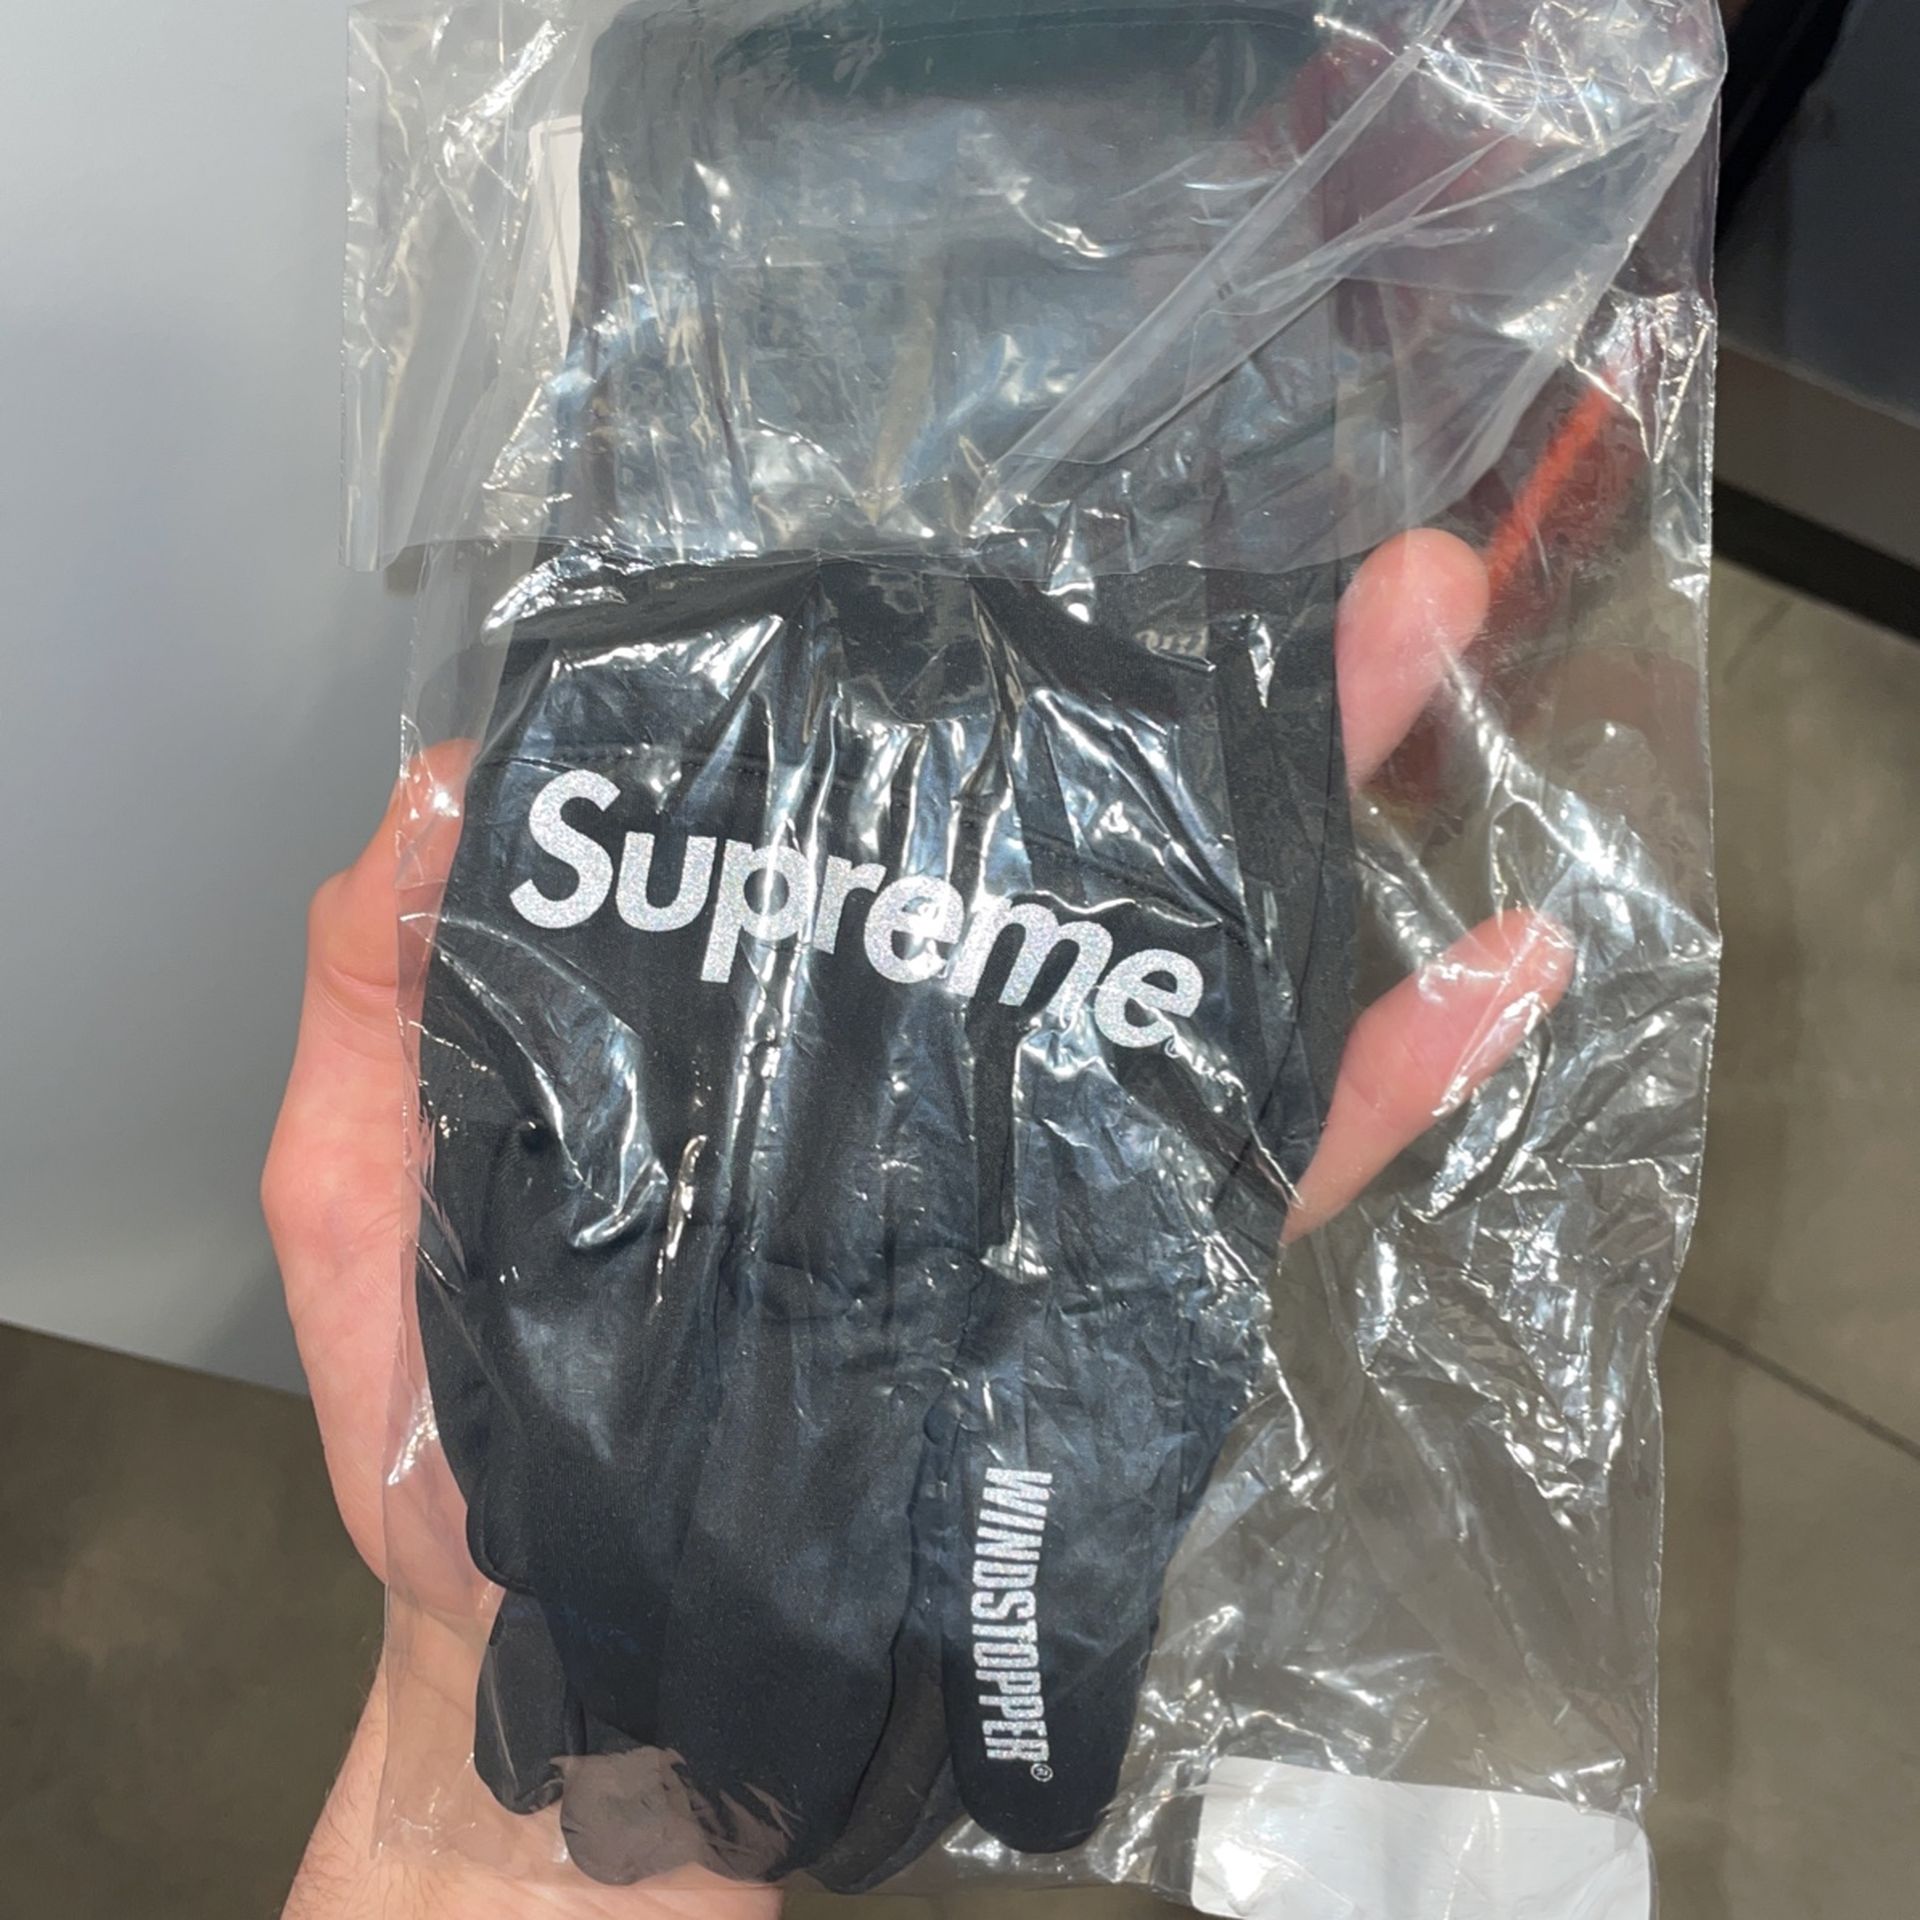 Supreme Windstopper Gloves